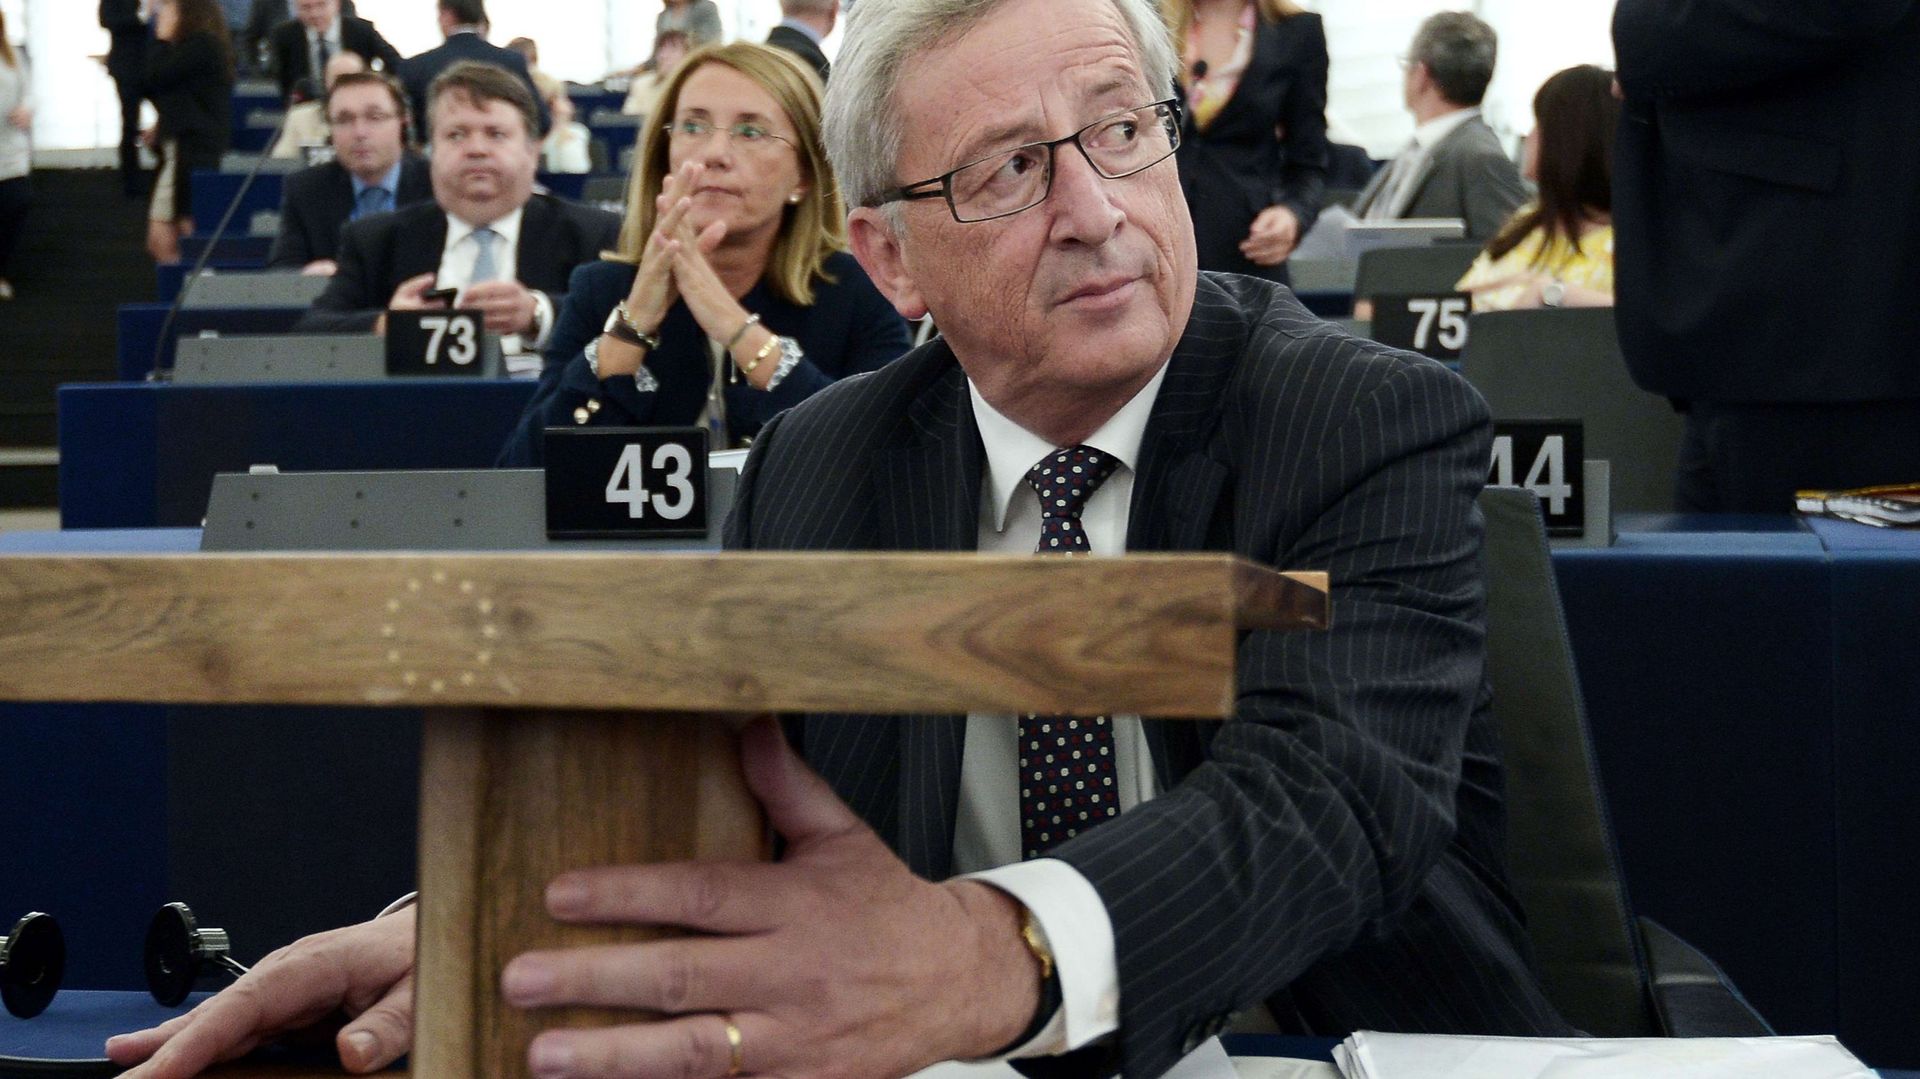 Juncker à Marine Le Pen: "Merci de ne pas voter pour moi!"